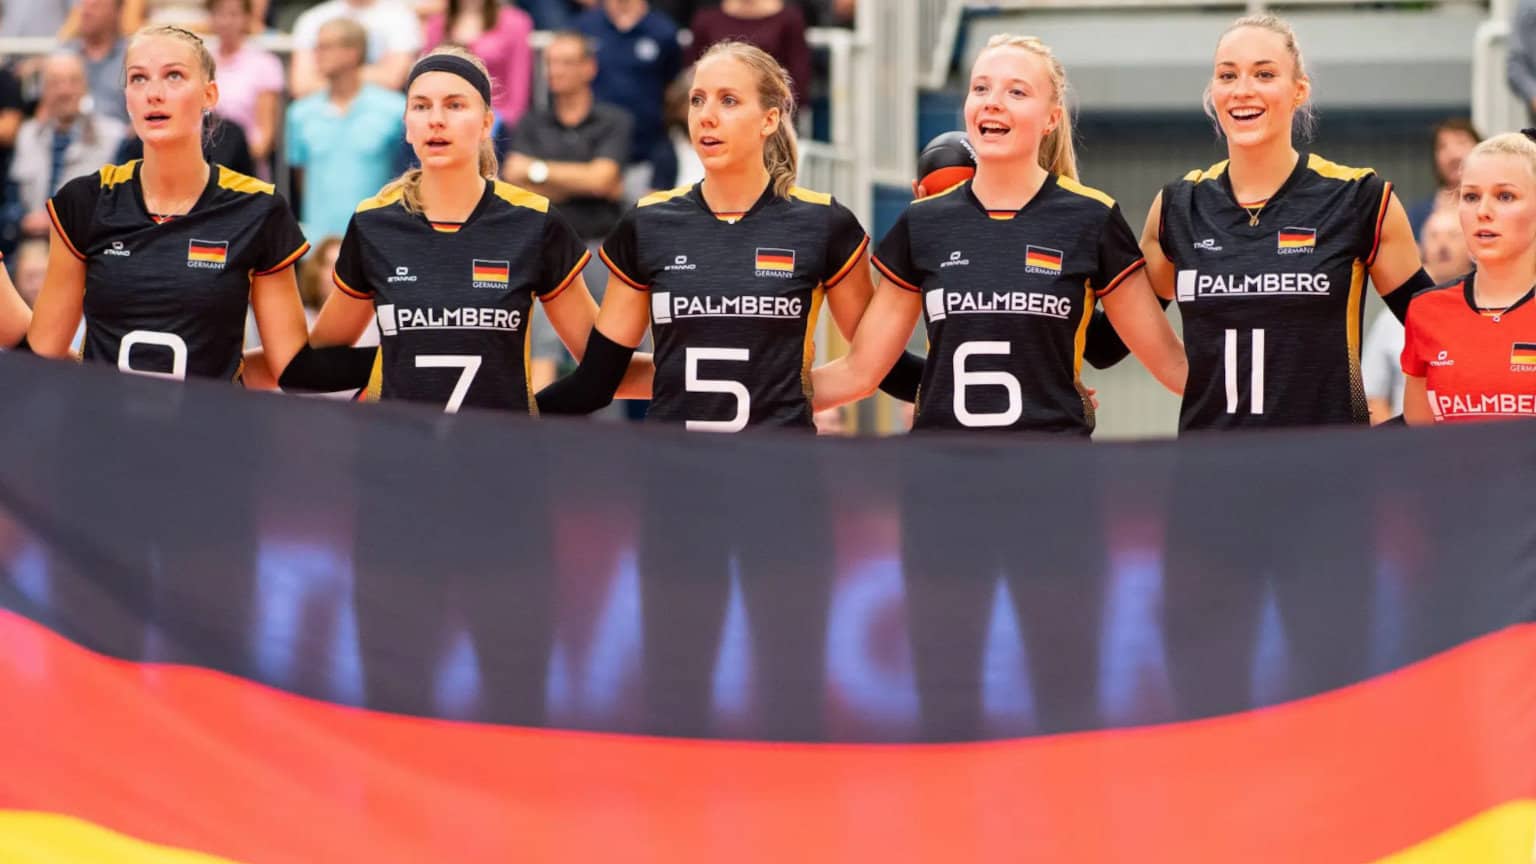 SPIEGEL hetzt gegen deutsches Nationalteam: „Volleyballspielerinnen sind zu weiß!“